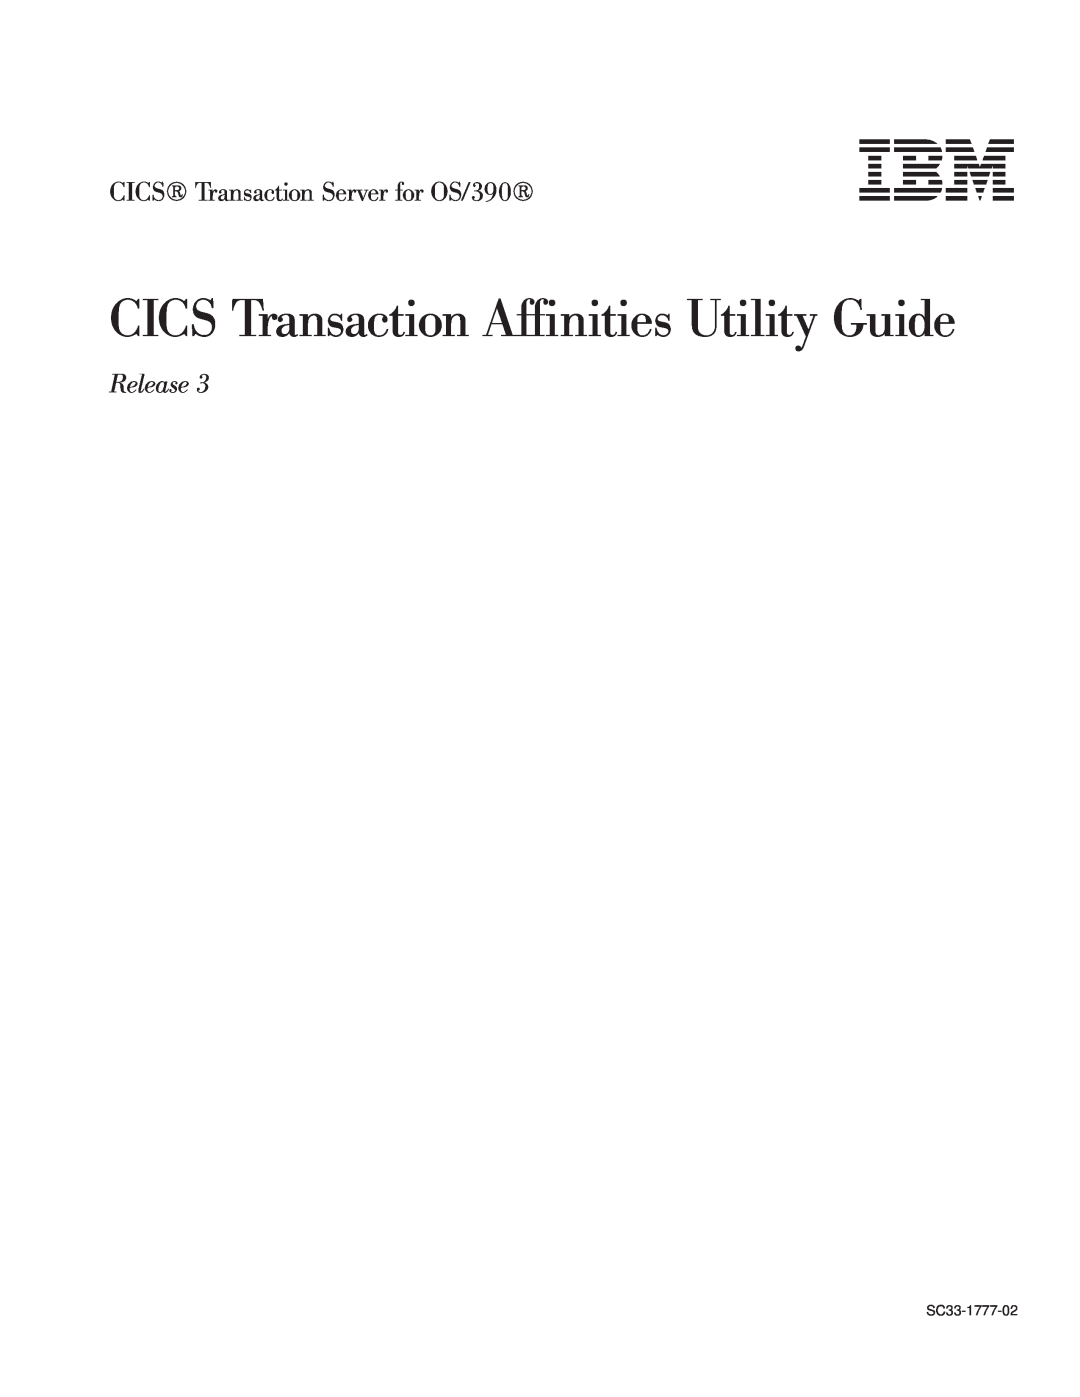 IBM manual CICS Transaction Affinities Utility Guide, CICS Transaction Server for OS/390, Release 